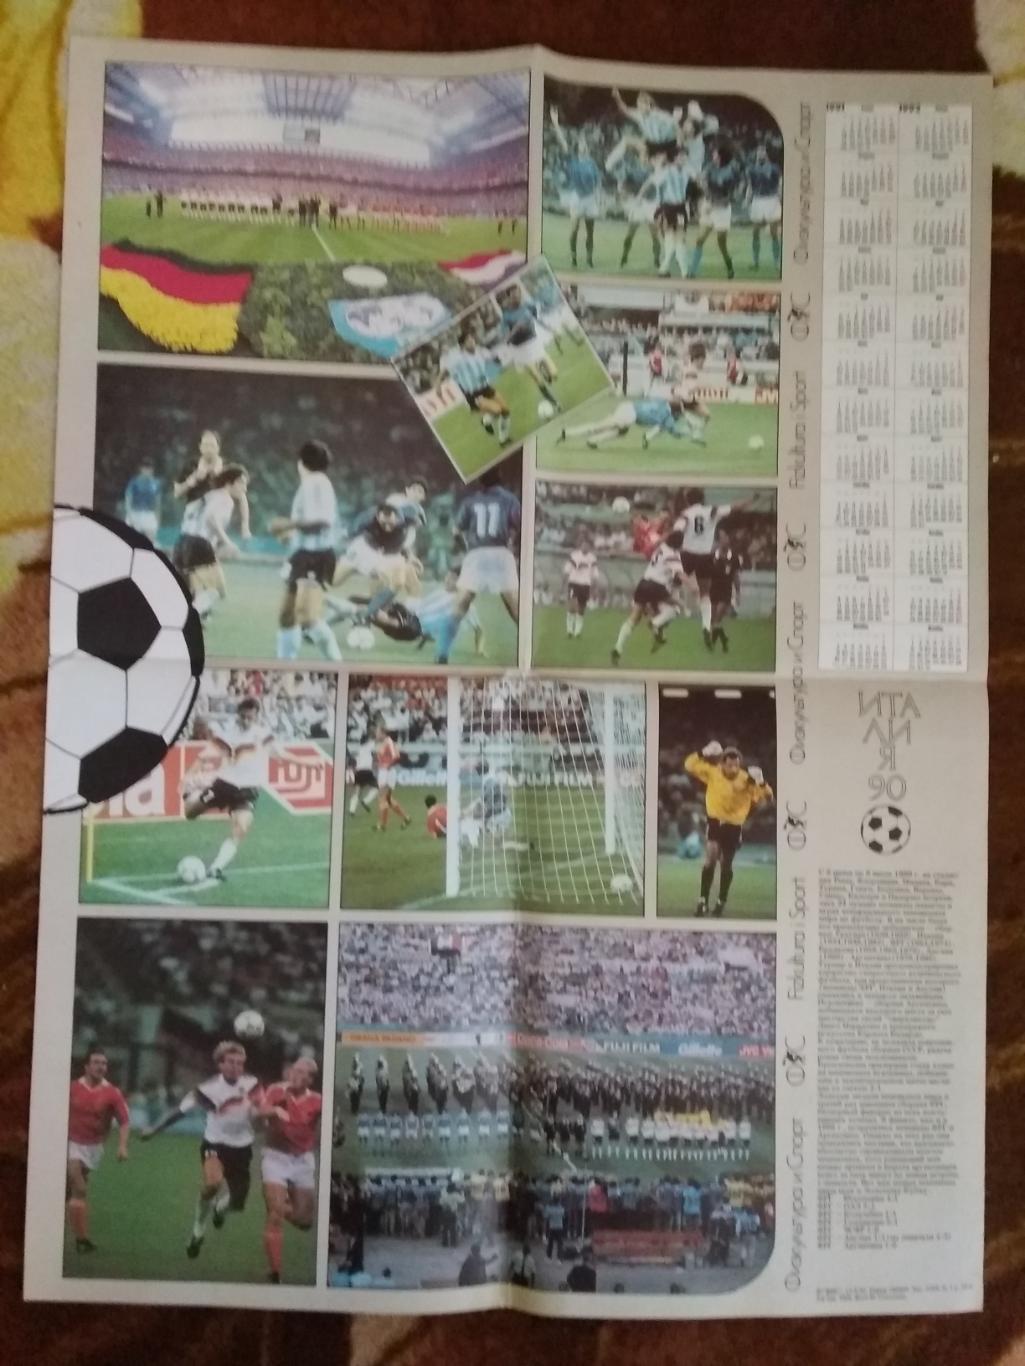 Плакат-календарь.Футбол. Италия 90.ЧМ 1990 Италия.ФиС 1990 г.